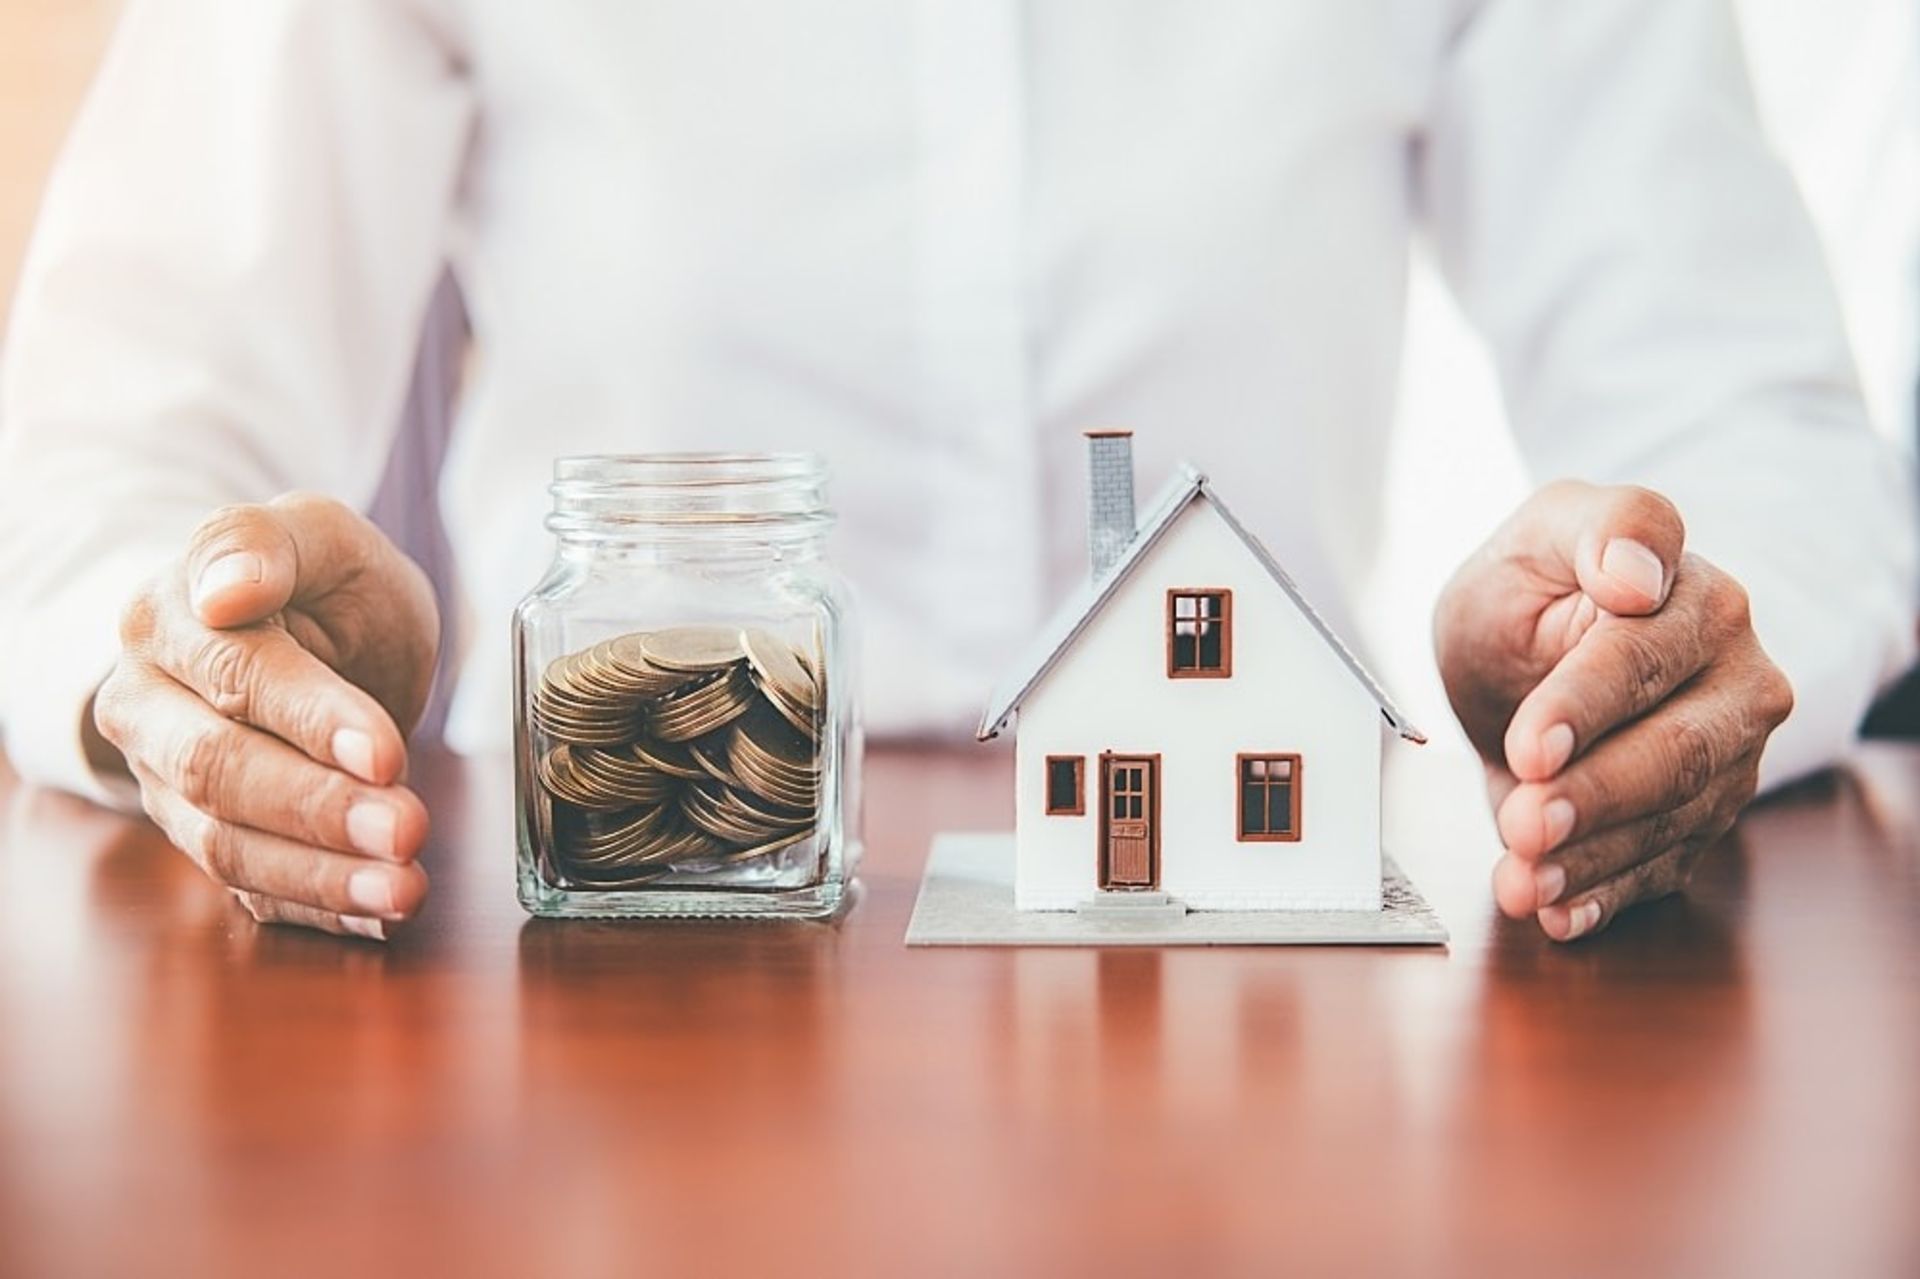 Sở hữu được 6 yếu tố này về tài chính, chúc mừng bạn có thể tiến hành mua nhà ngay lập tức - Ảnh 2.